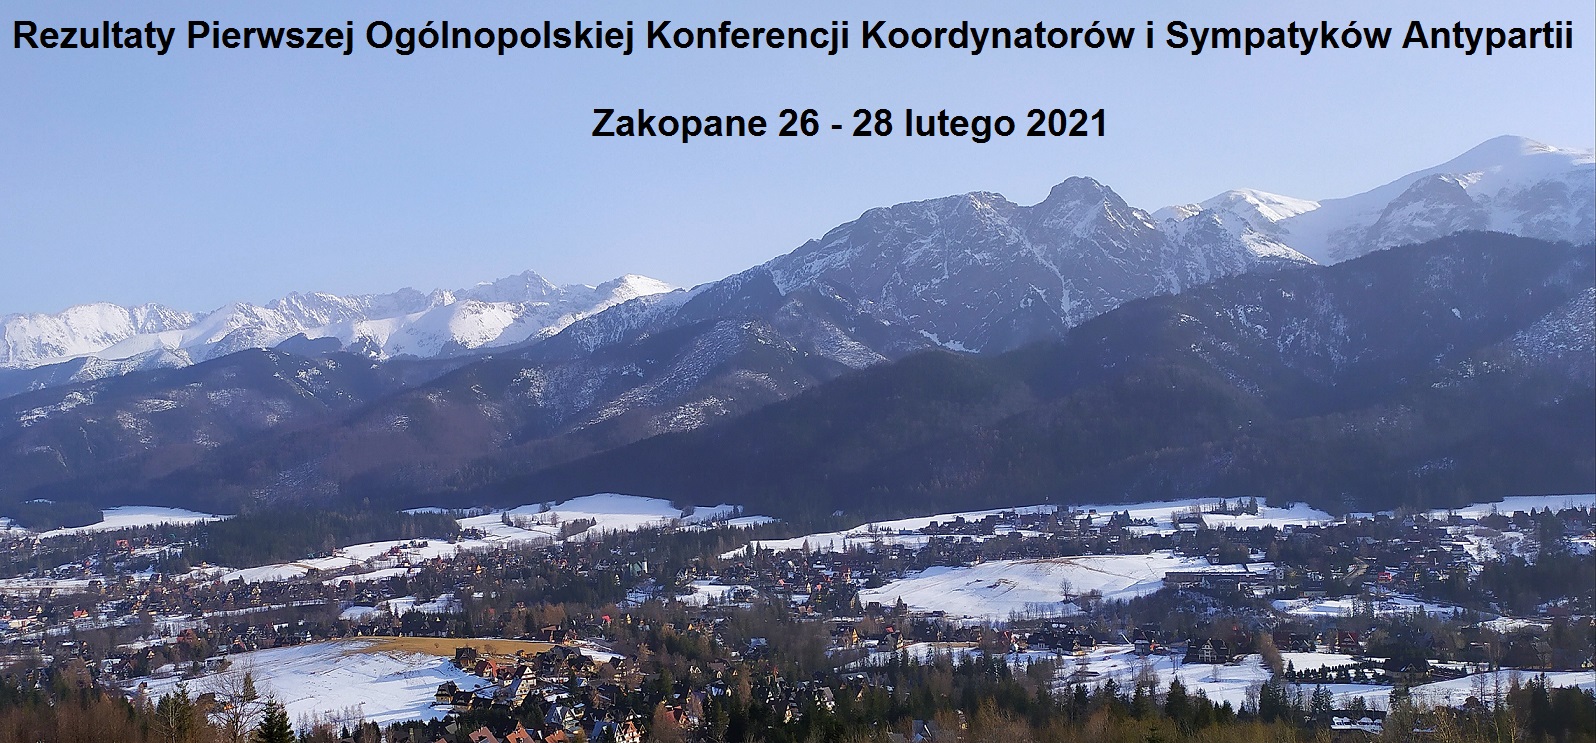 Relacja filmowa z Pierwszej Ogólnopolskiej Konferencji Koordynatorów Antypartii w Zakopanem 26-28 lutego 2021